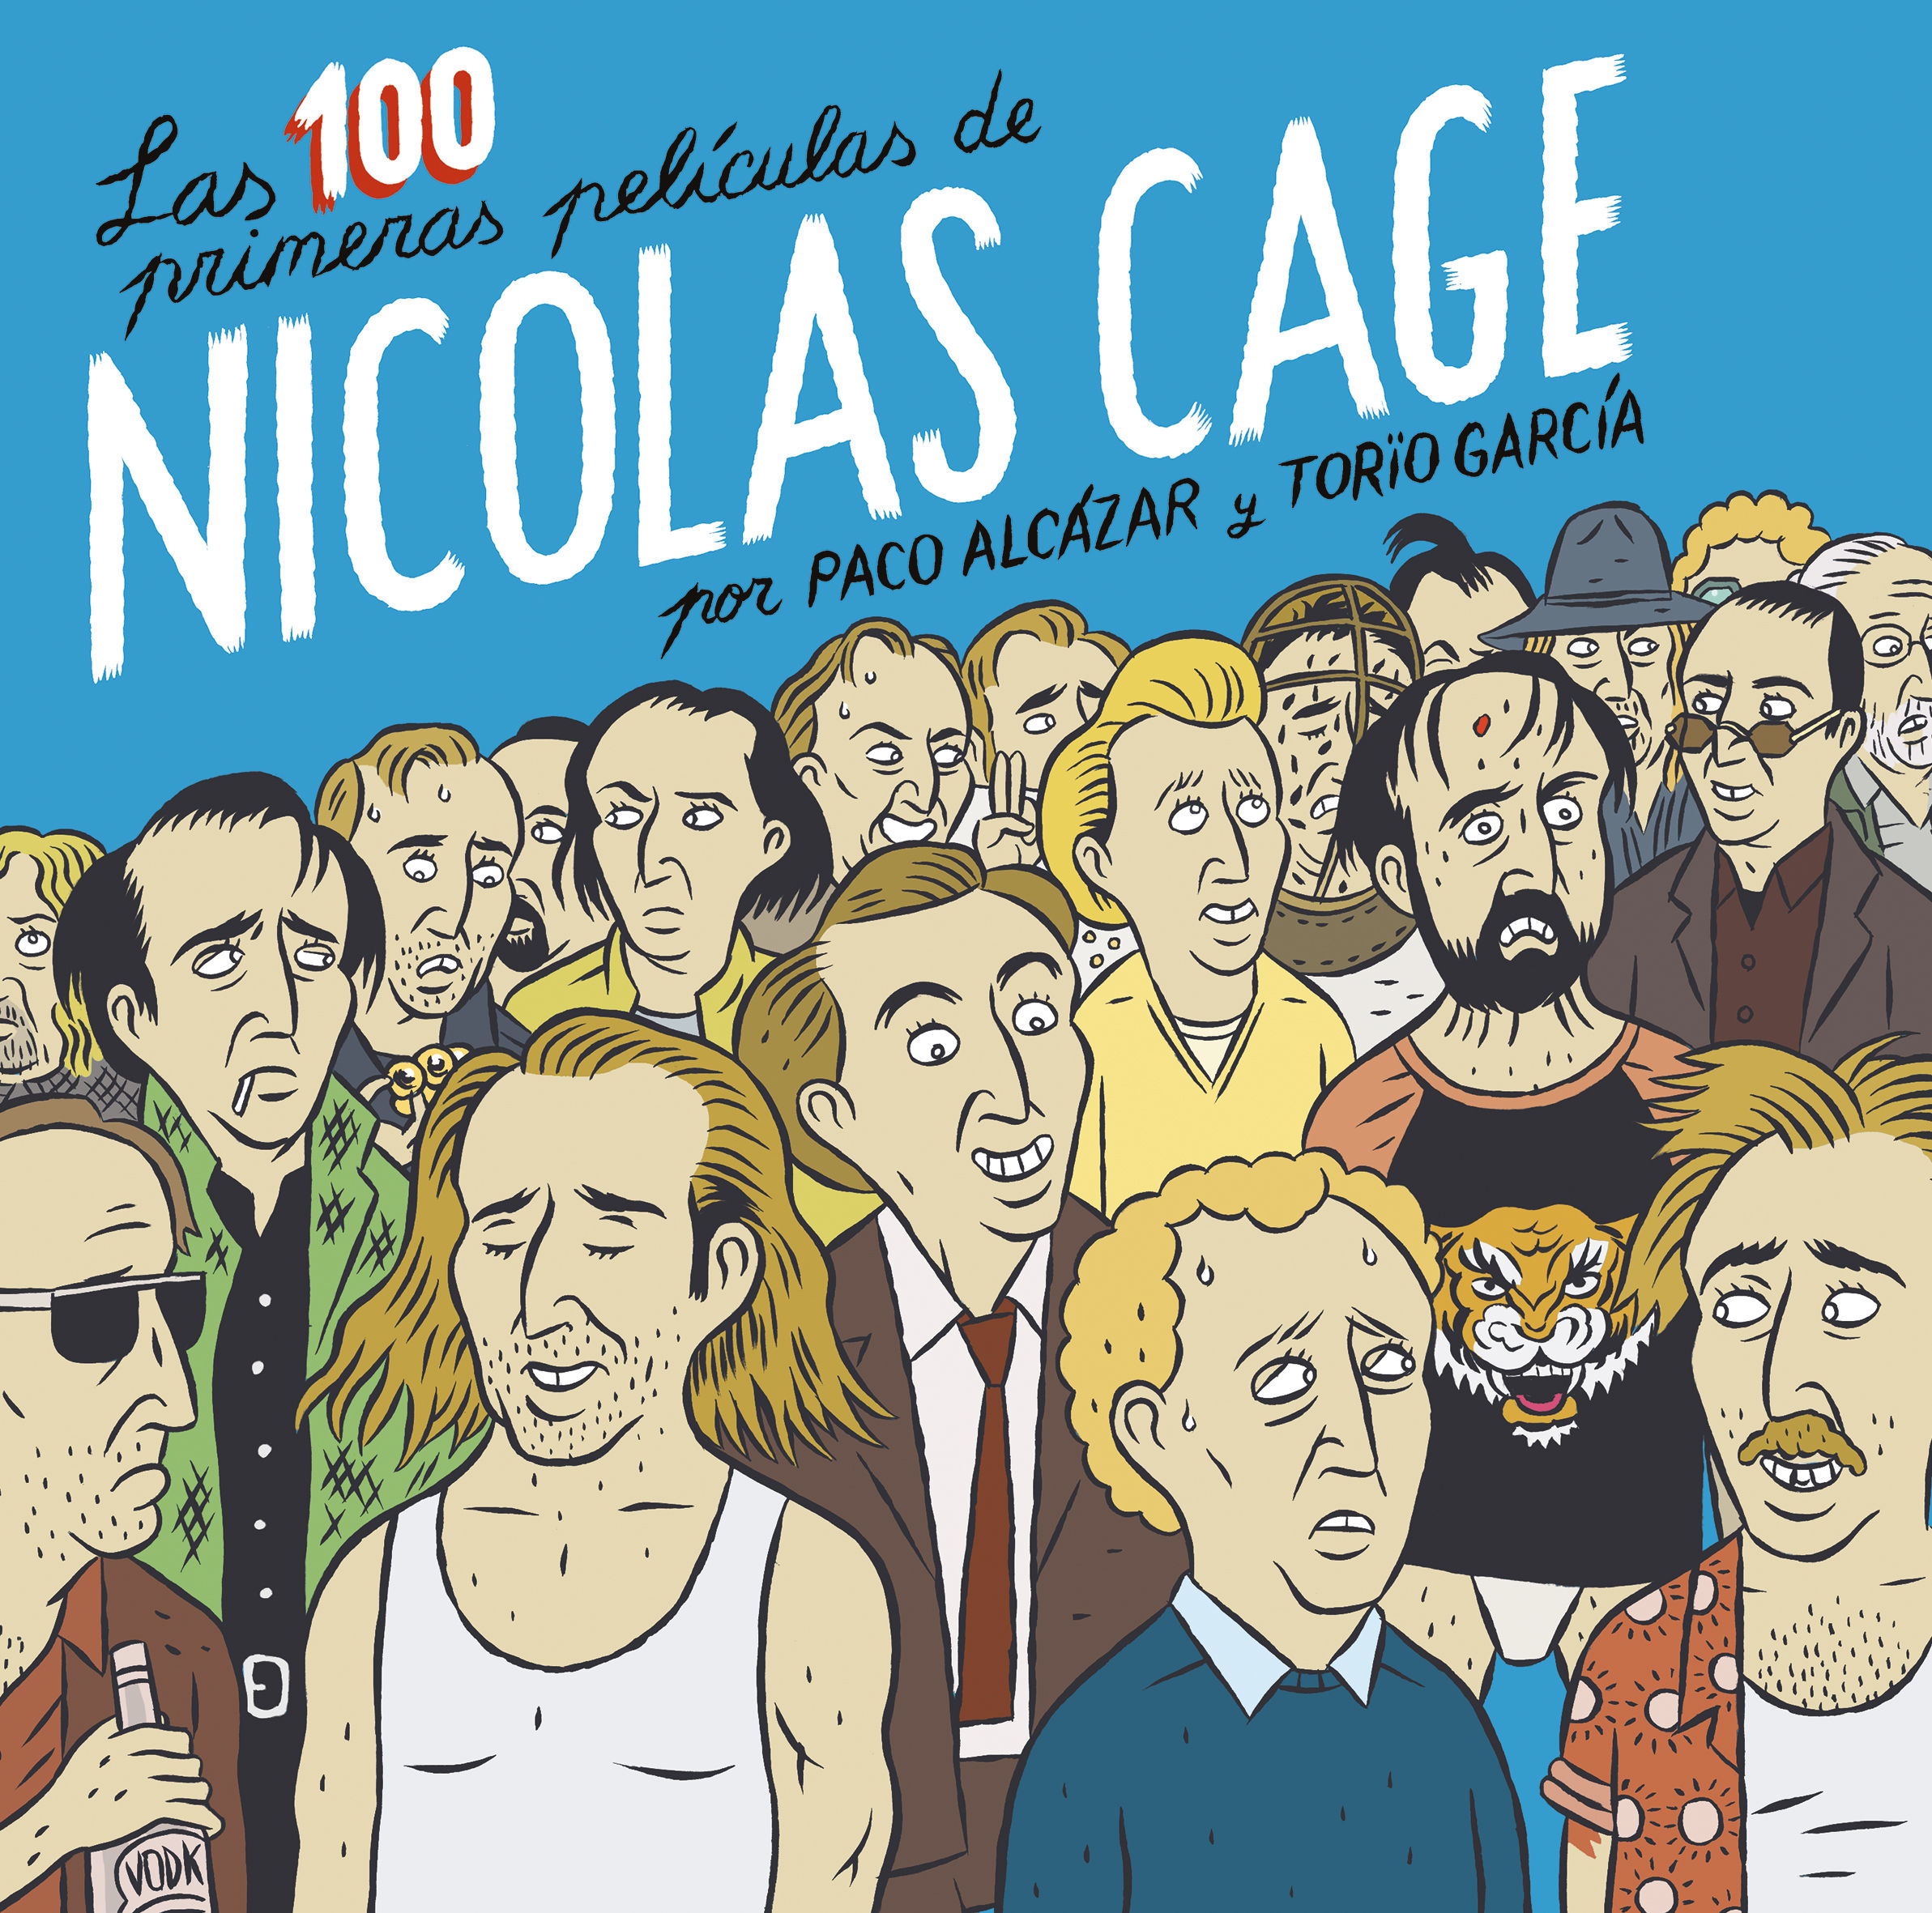 LAS 100 PRIMERAS PELÍCULAS DE NICOLAS CAGE